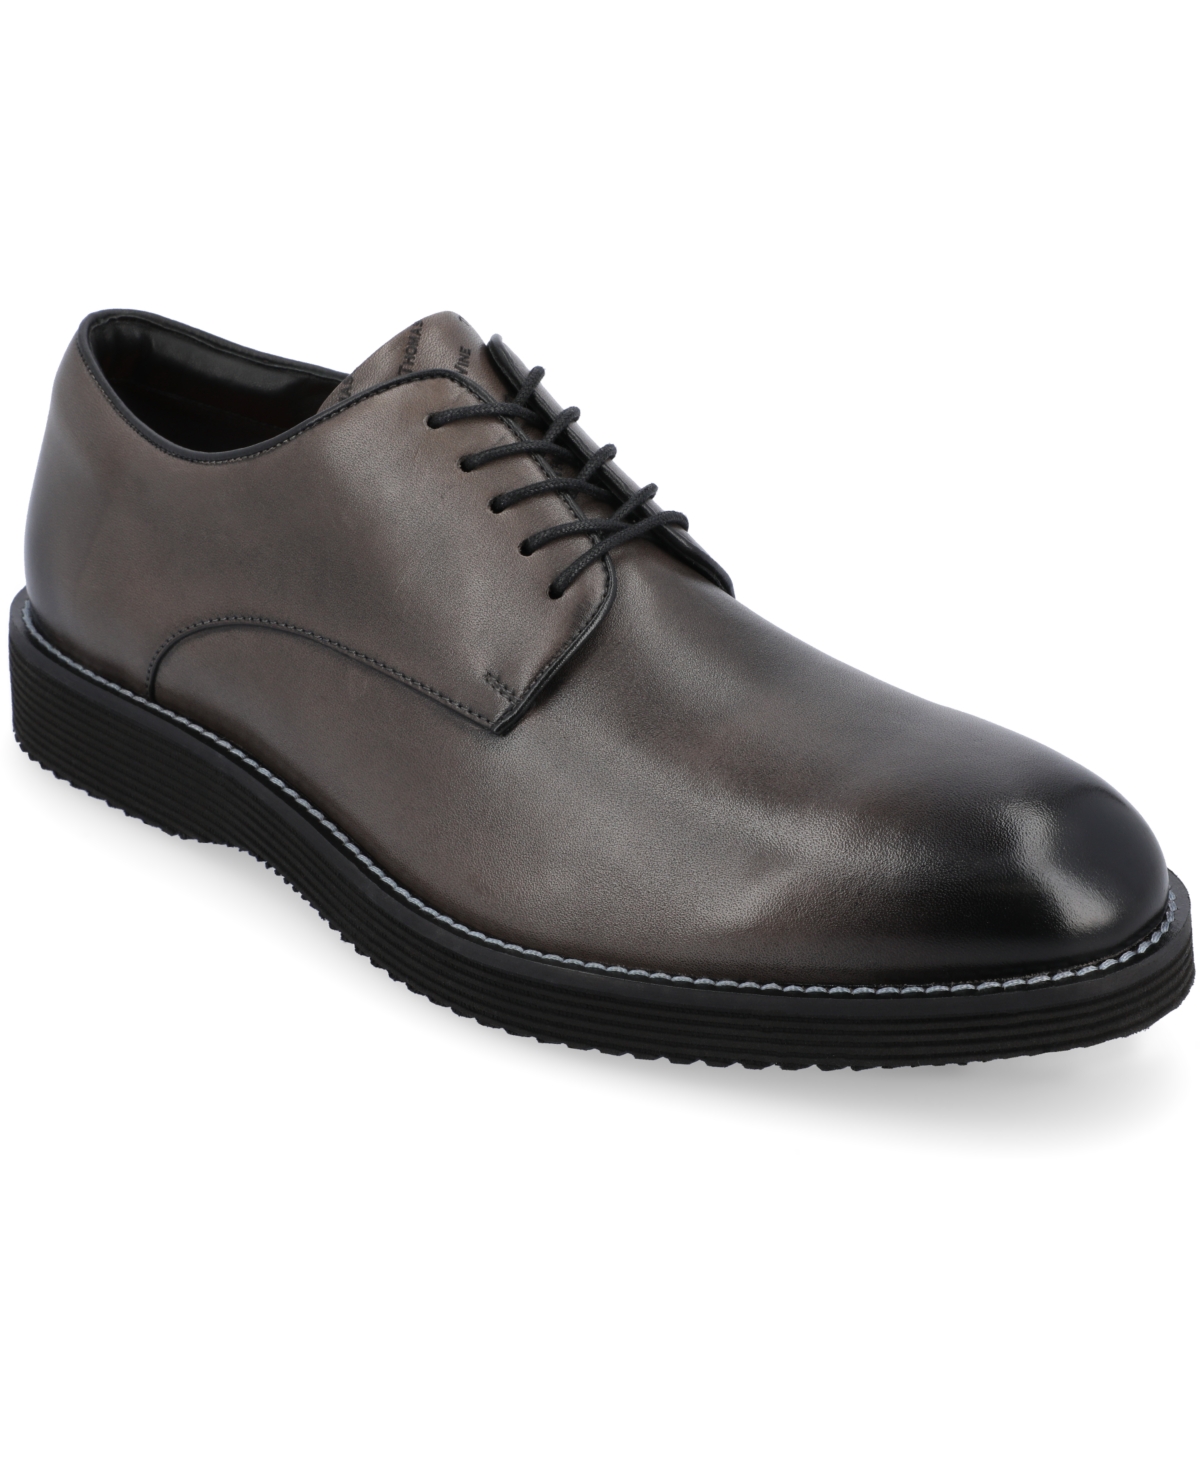 Men's Latimer Plain Toe Derby Dress Shoes - Cognac